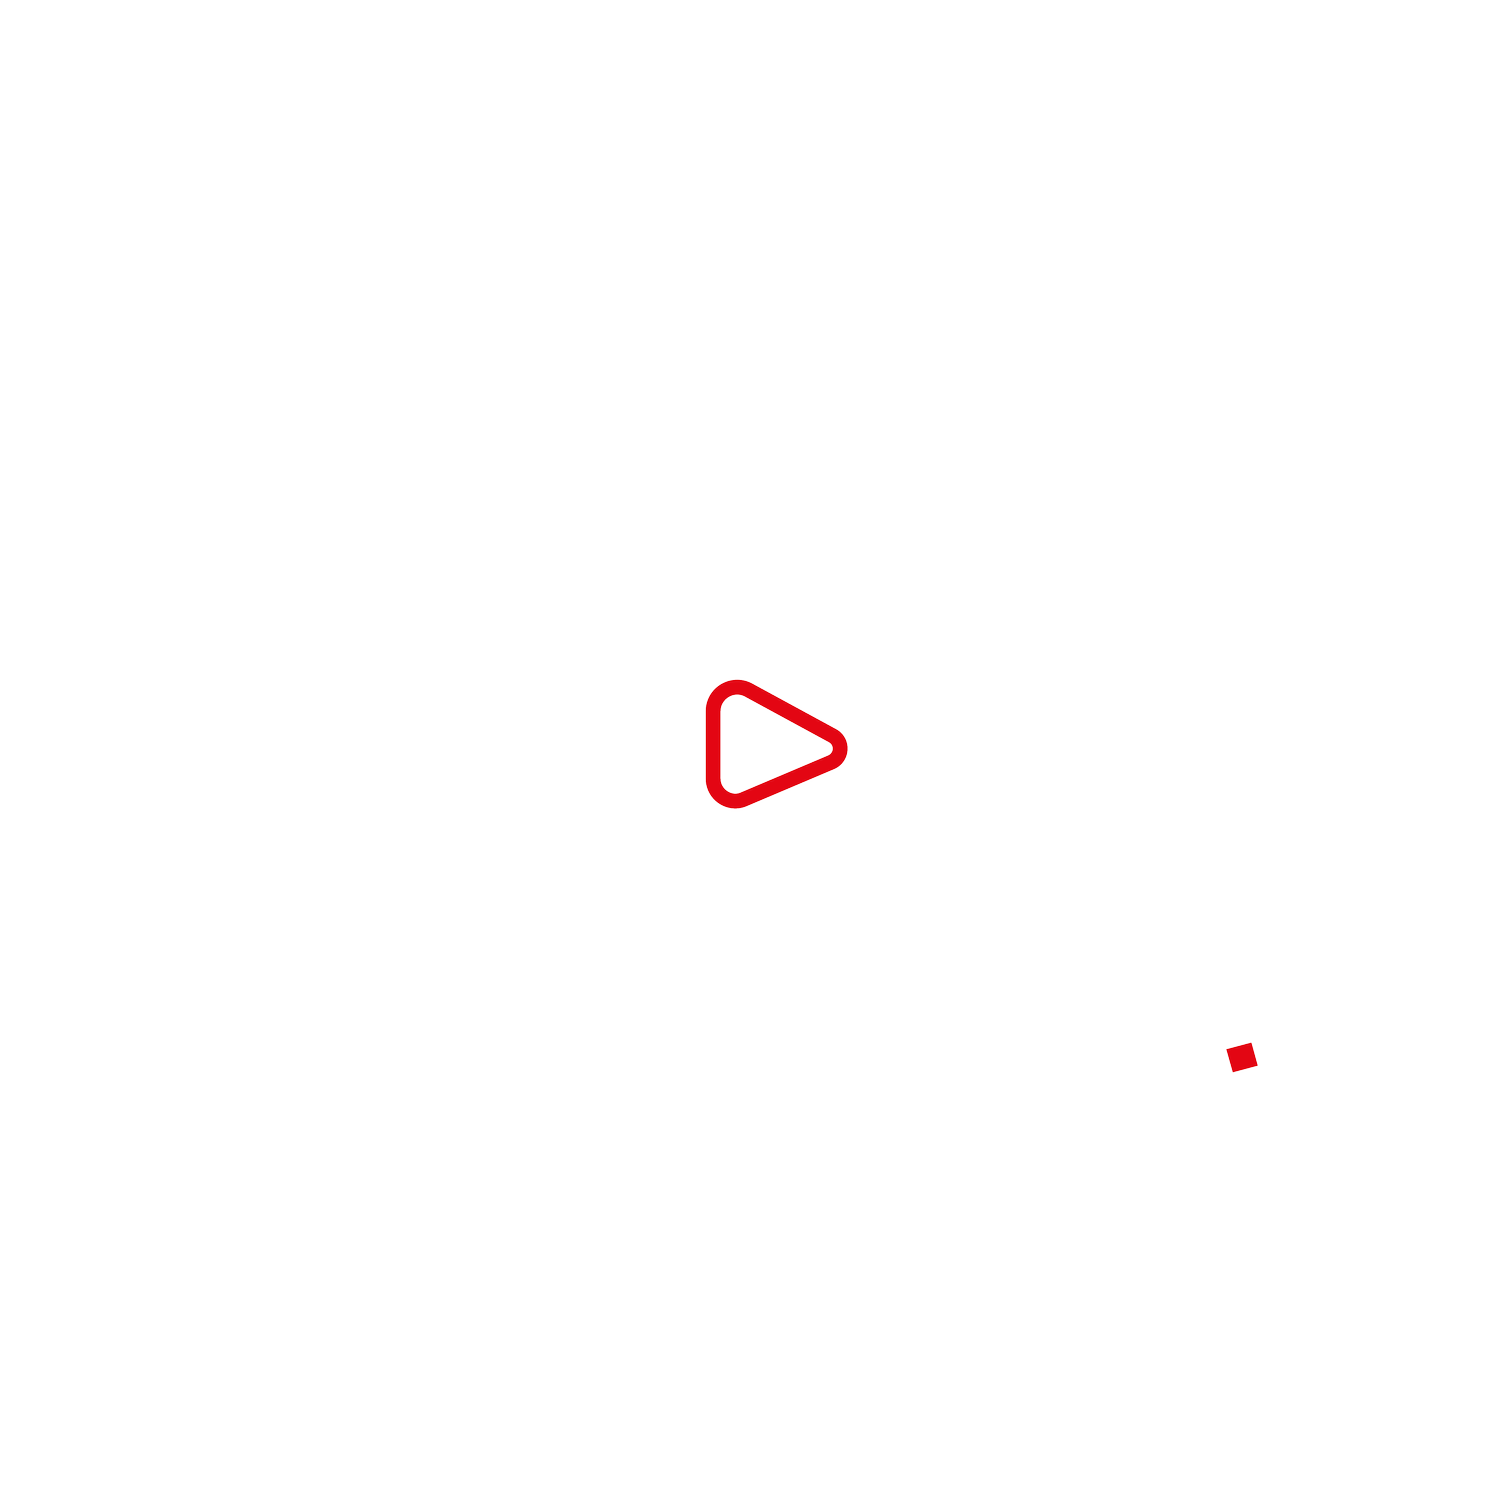 Lonely Media Studios